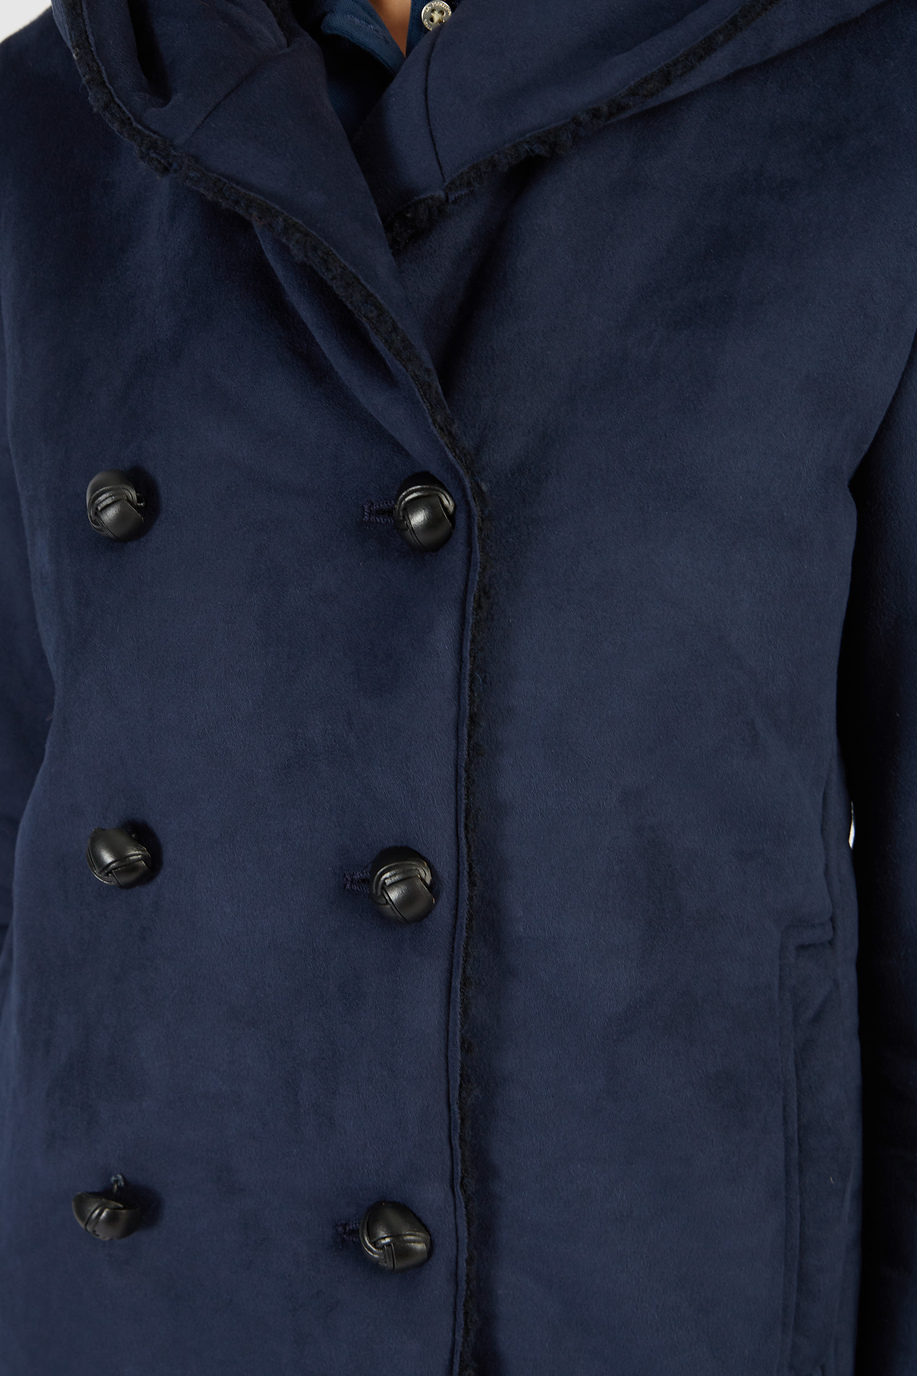 Damen-Jacke mit Samteffekt und Knöpfen - Winterlooks für sie | La Martina - Official Online Shop